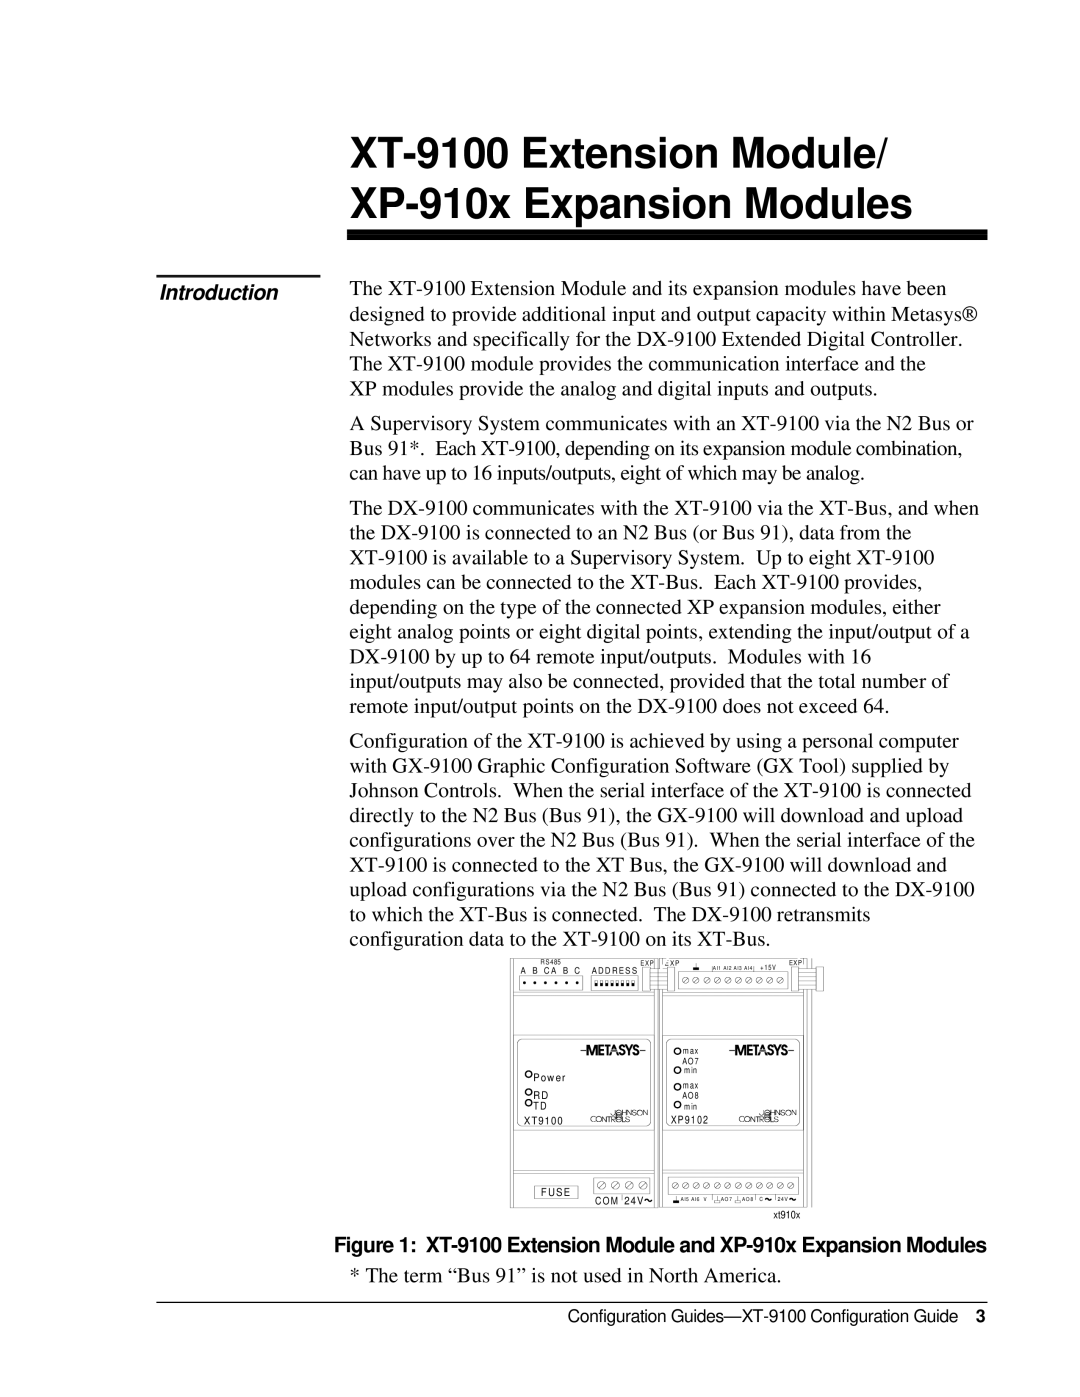 Johnson Controls appendix XT-9100 Extension Module XP-910x Expansion Modules, Introduction 